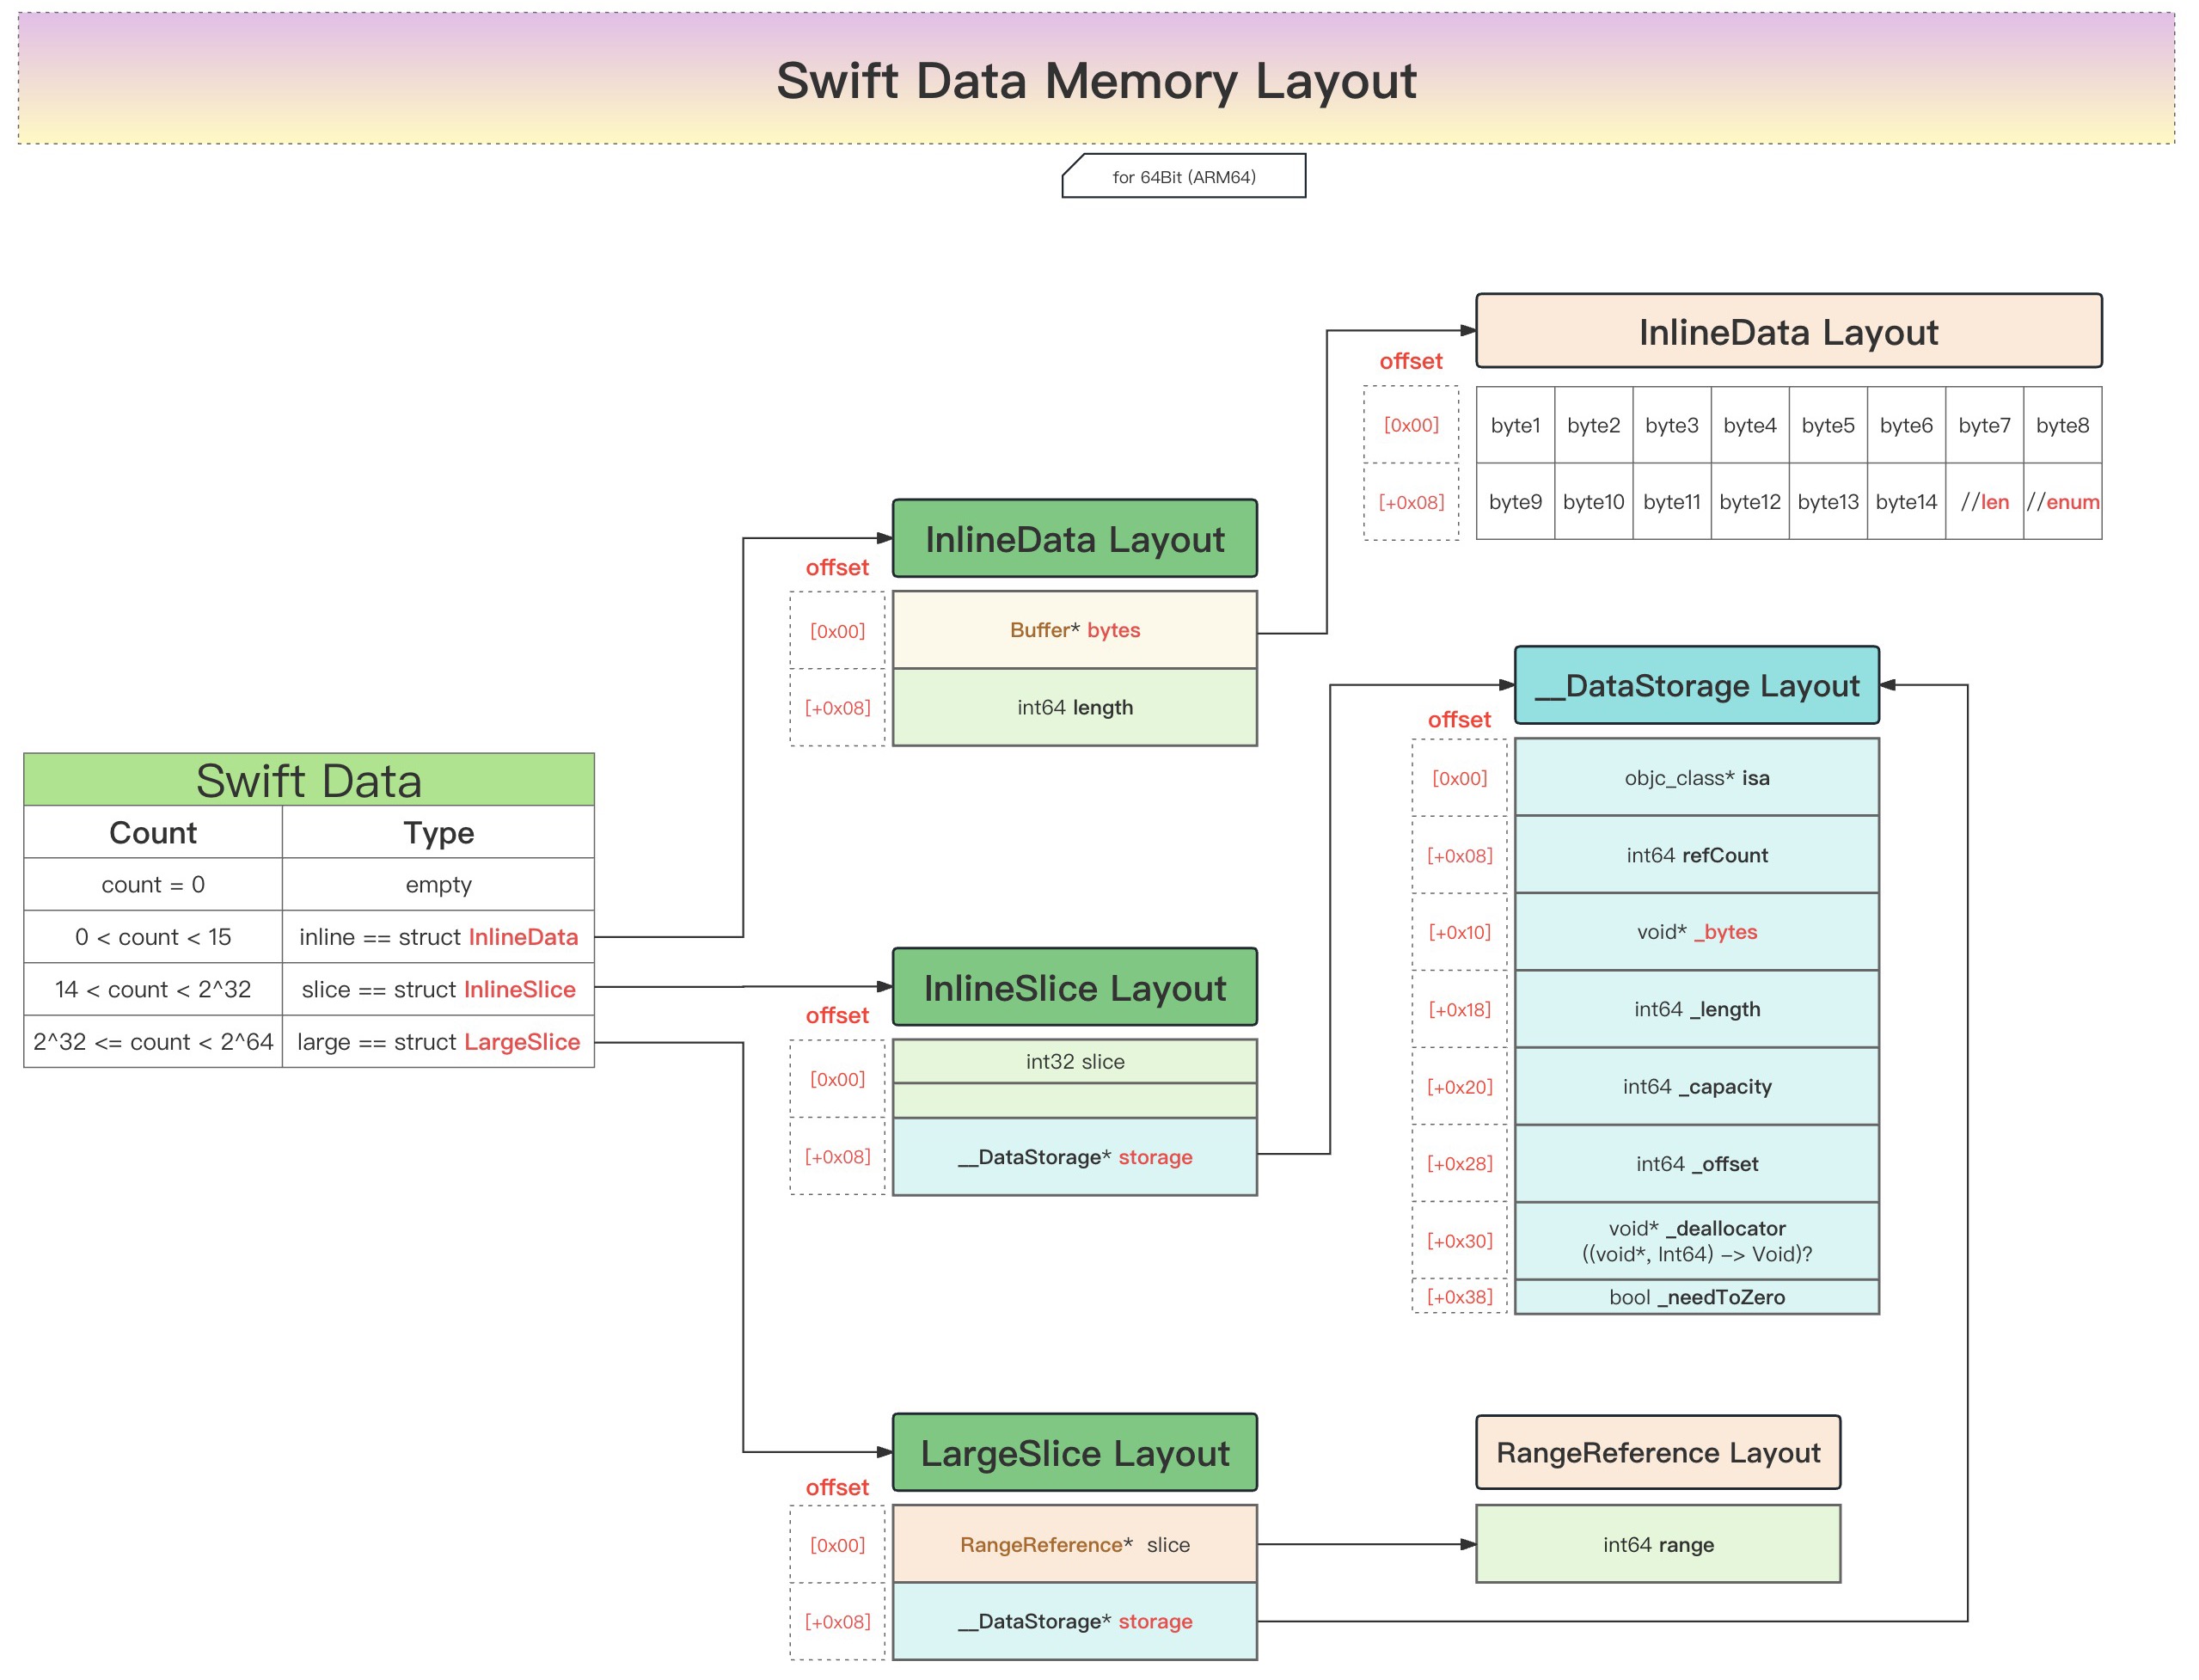 swift_data_memory_layout_core